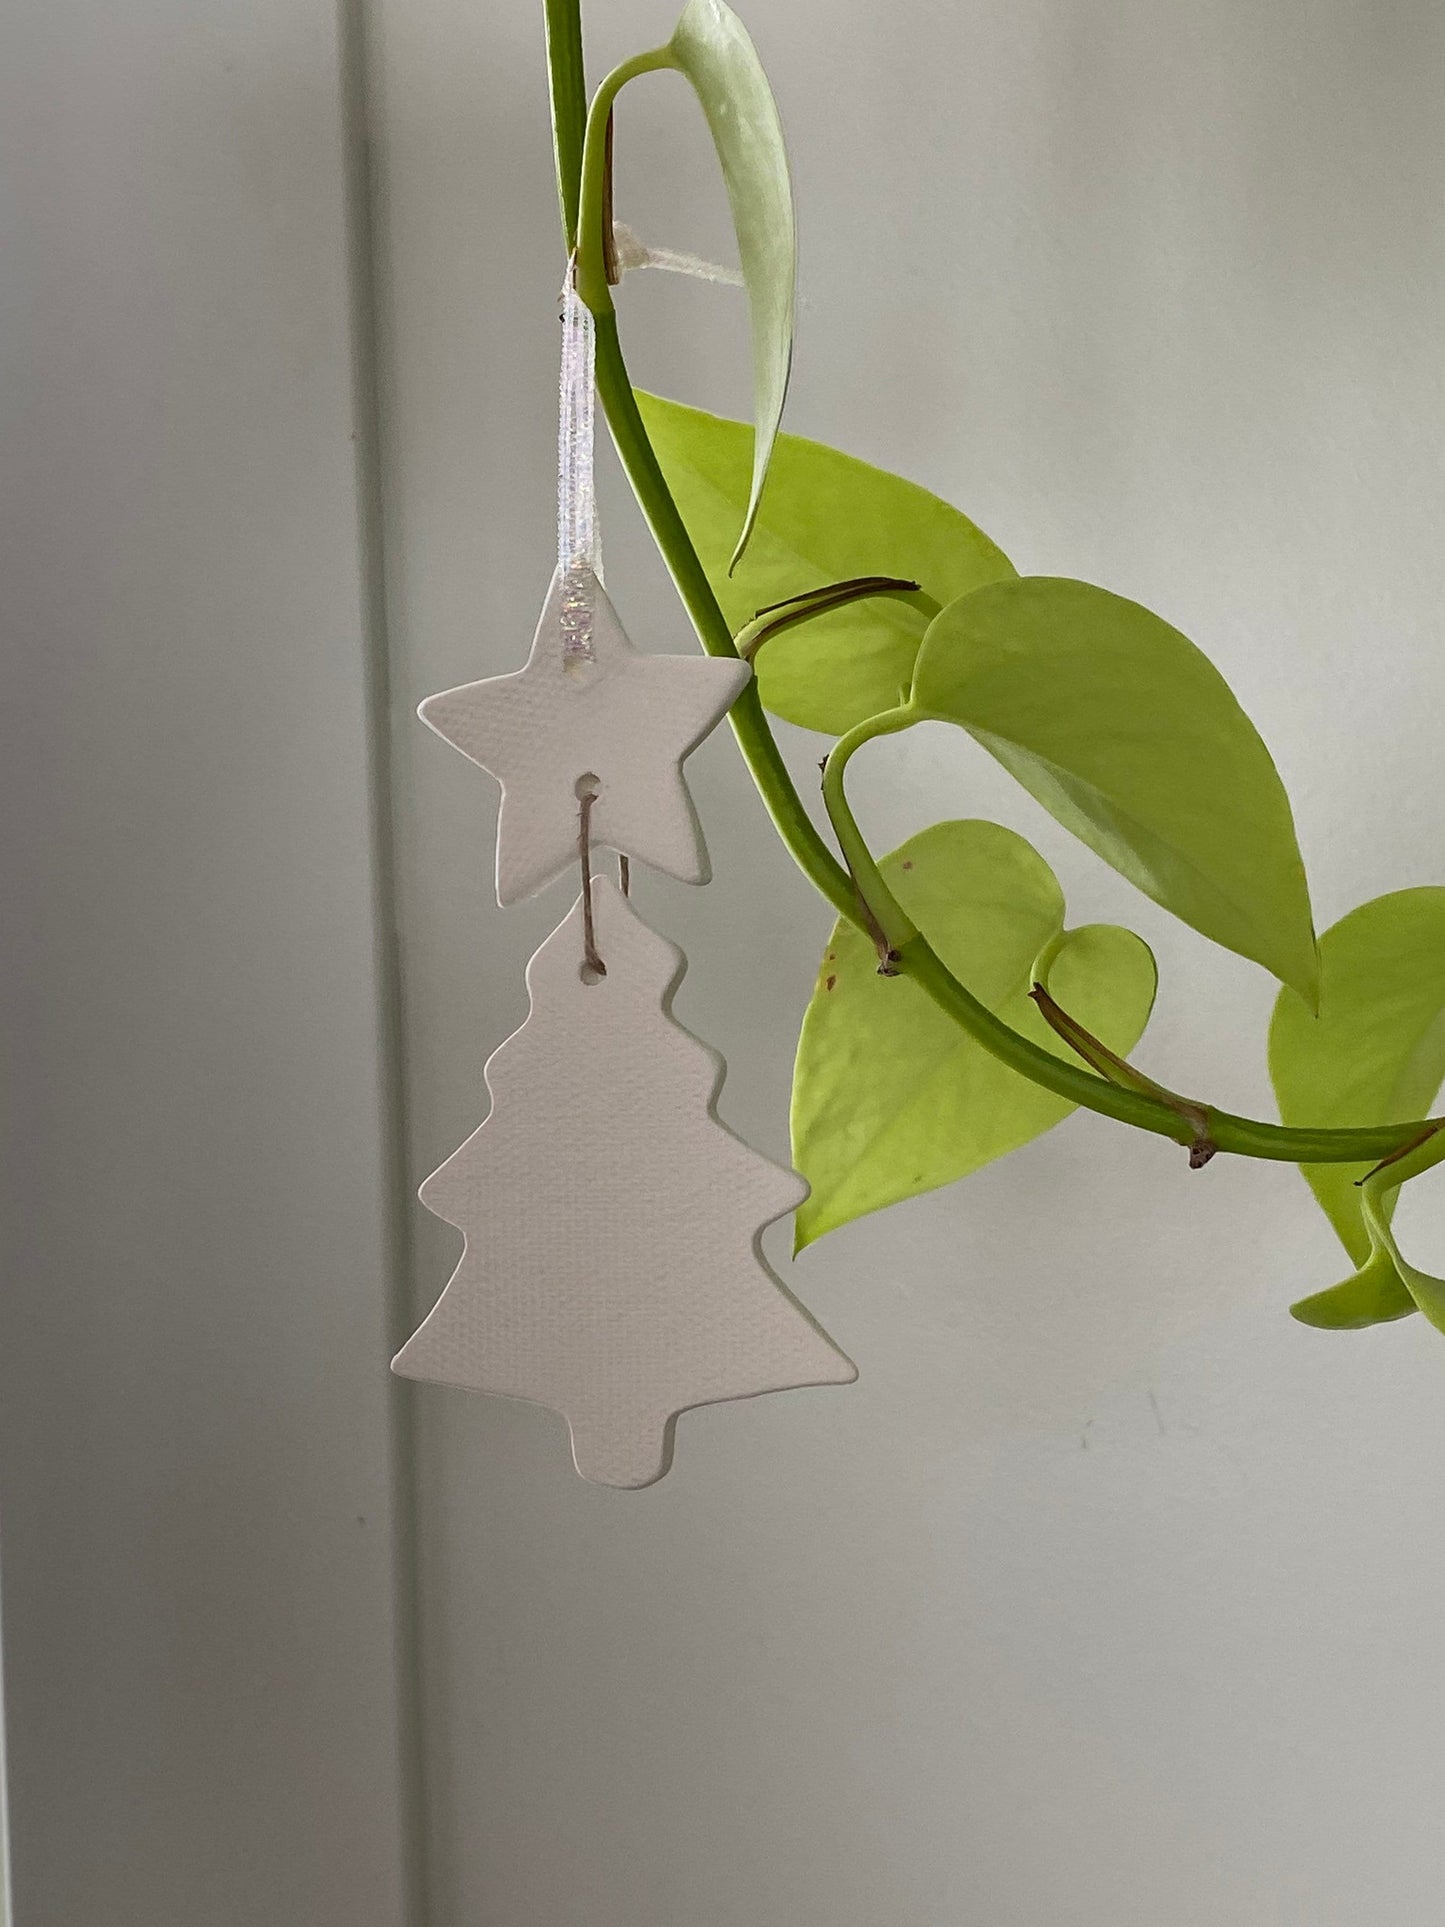 Pepo Ceramics Christmas Tree Ornament - essential oil clay diffuser